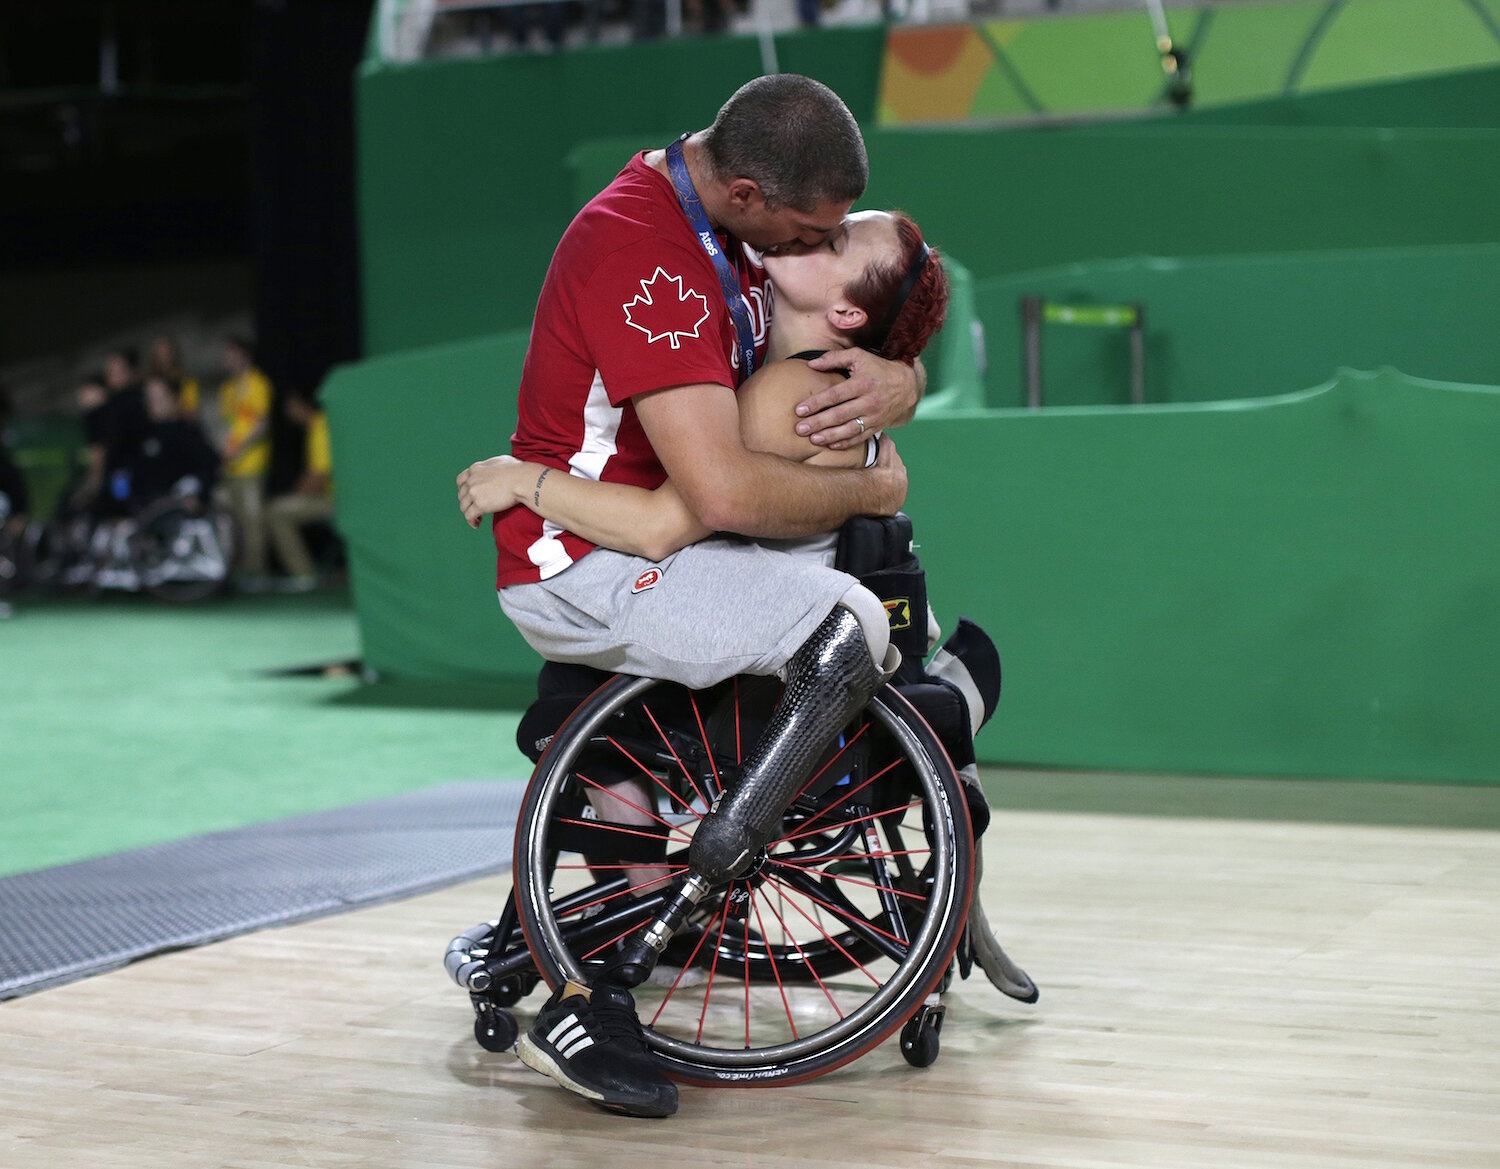 <p>16 сентября. Рио-де-Жанейро, Бразилия. Игрок баскетбольной команды&nbsp;Канады на колясках&nbsp;Адам Лансиа целует свою жену после матча на Паралимпийских играх.</p>